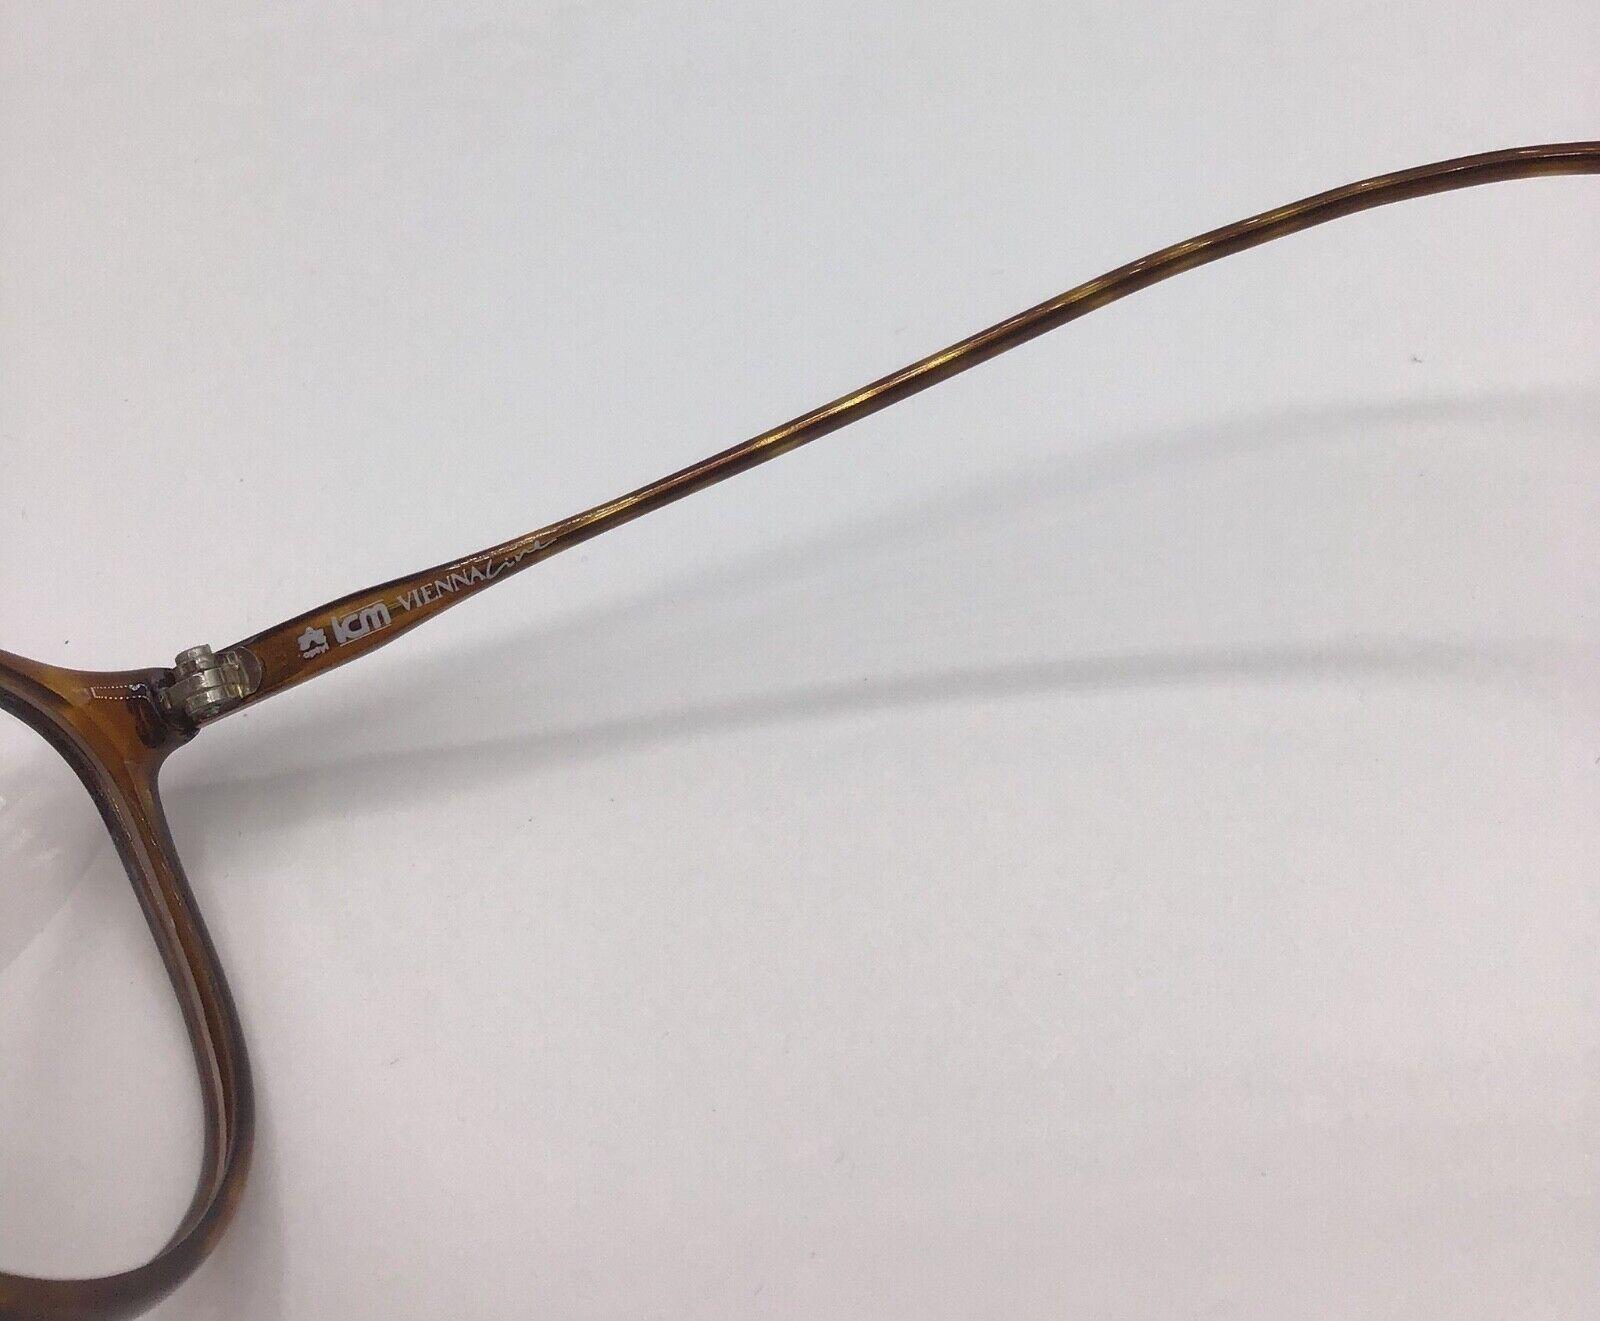 ViennaLine occhiale vintage Eyewear frame Made in Austria brillen 1467 lunettes